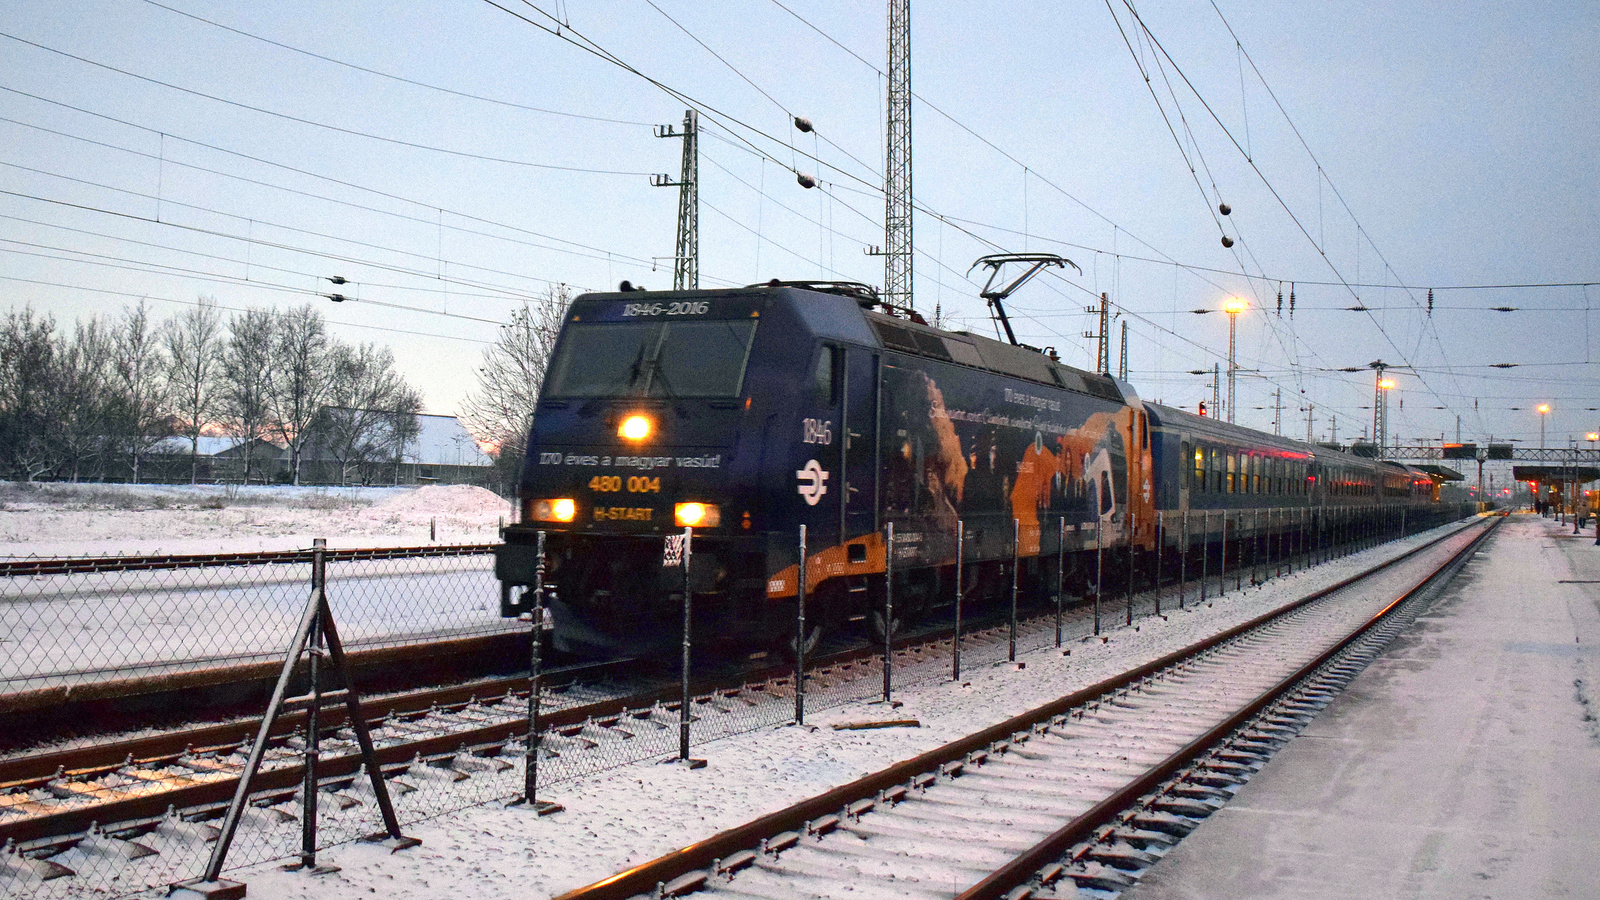 480 004 (170 éves a magyar vasút) Traxx